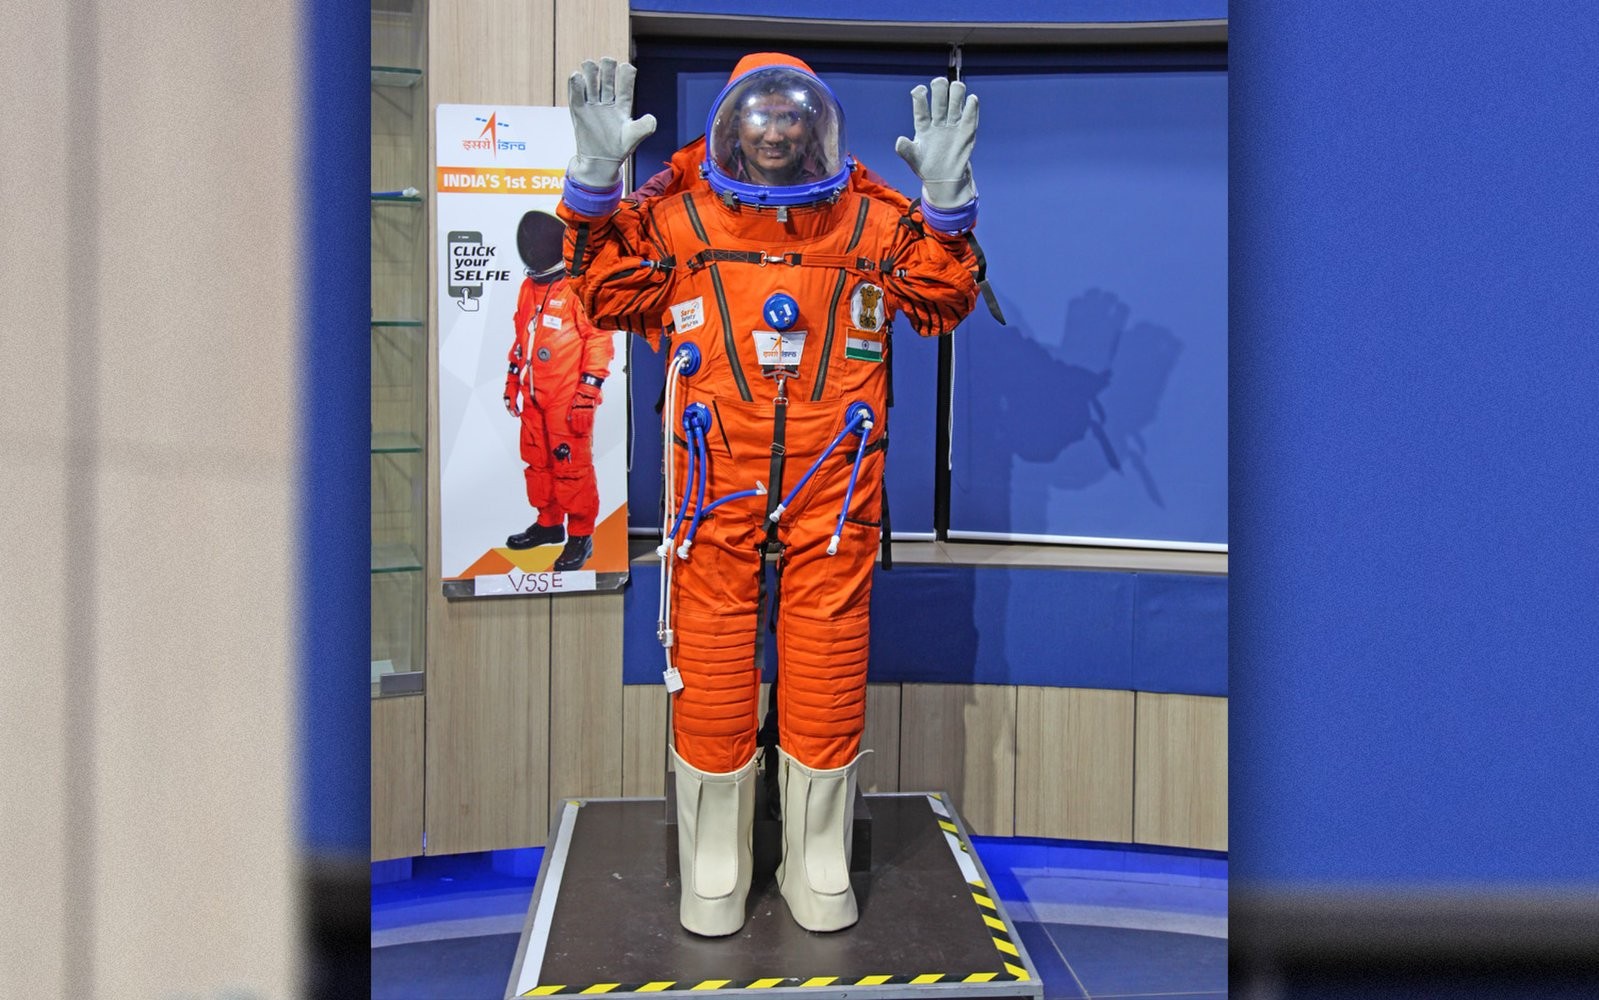 Hindistanlı astronotlar bu uzay kıyafetini giyecek